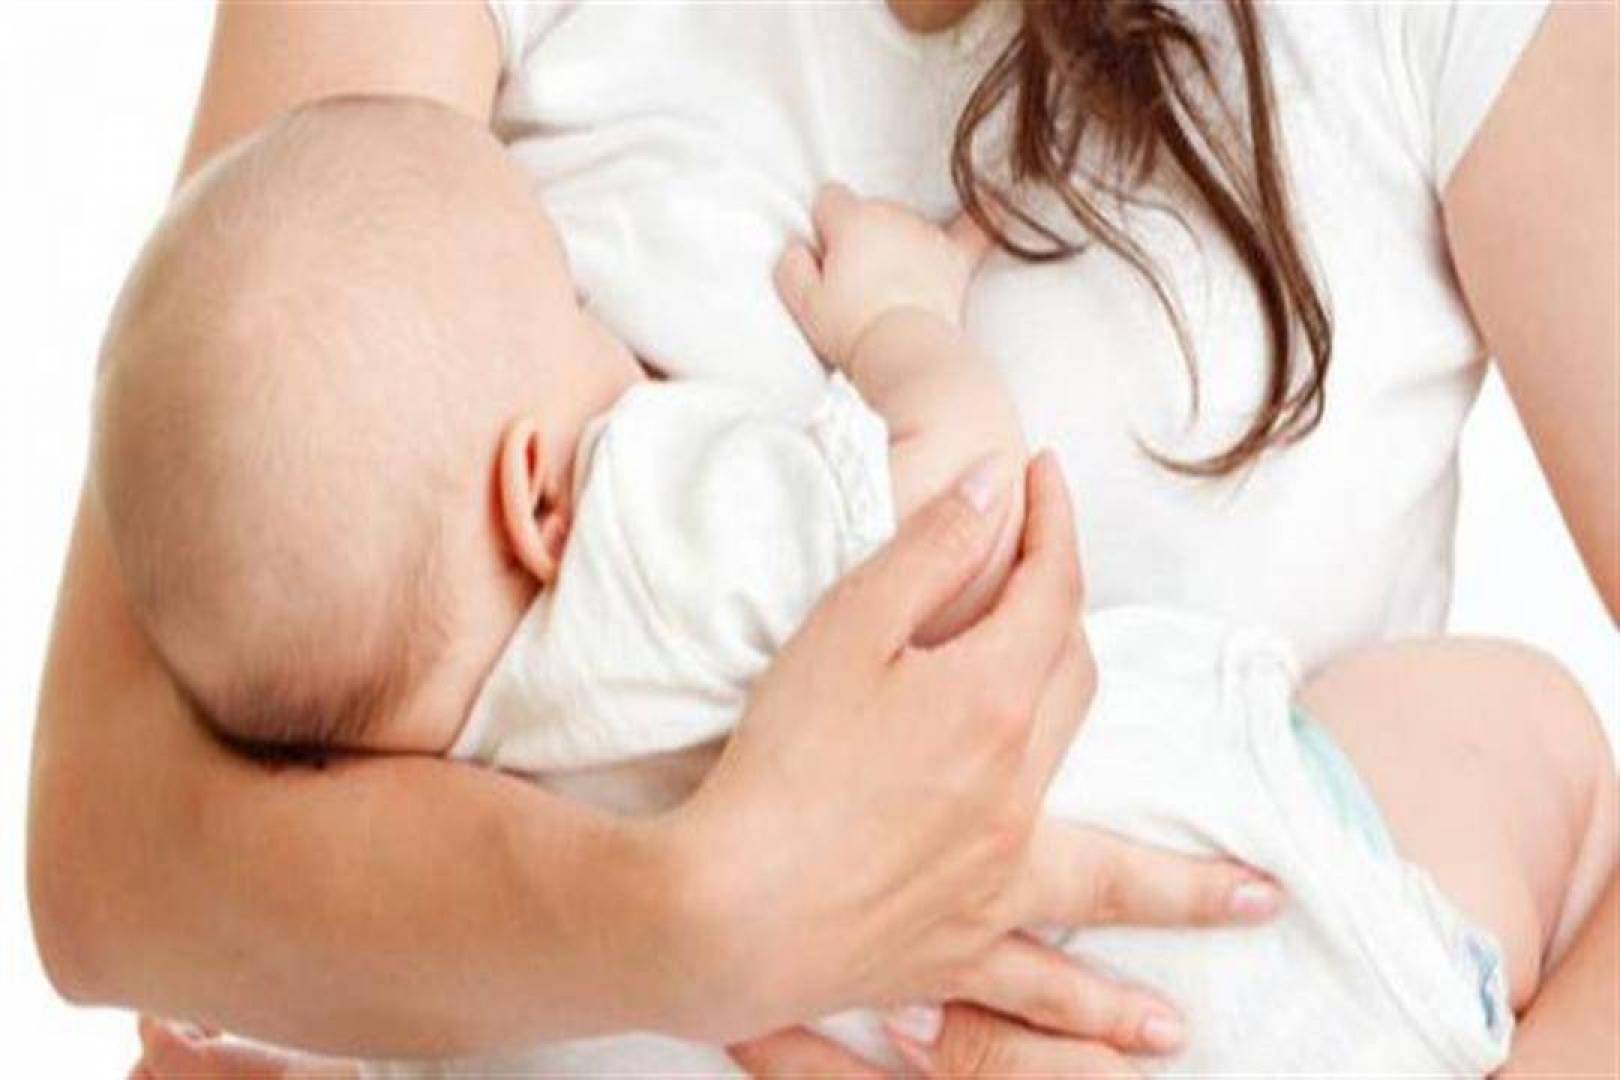 ما هي الأدوية التي يمنع تناولها أثناء الرضاعة الطبيعية؟